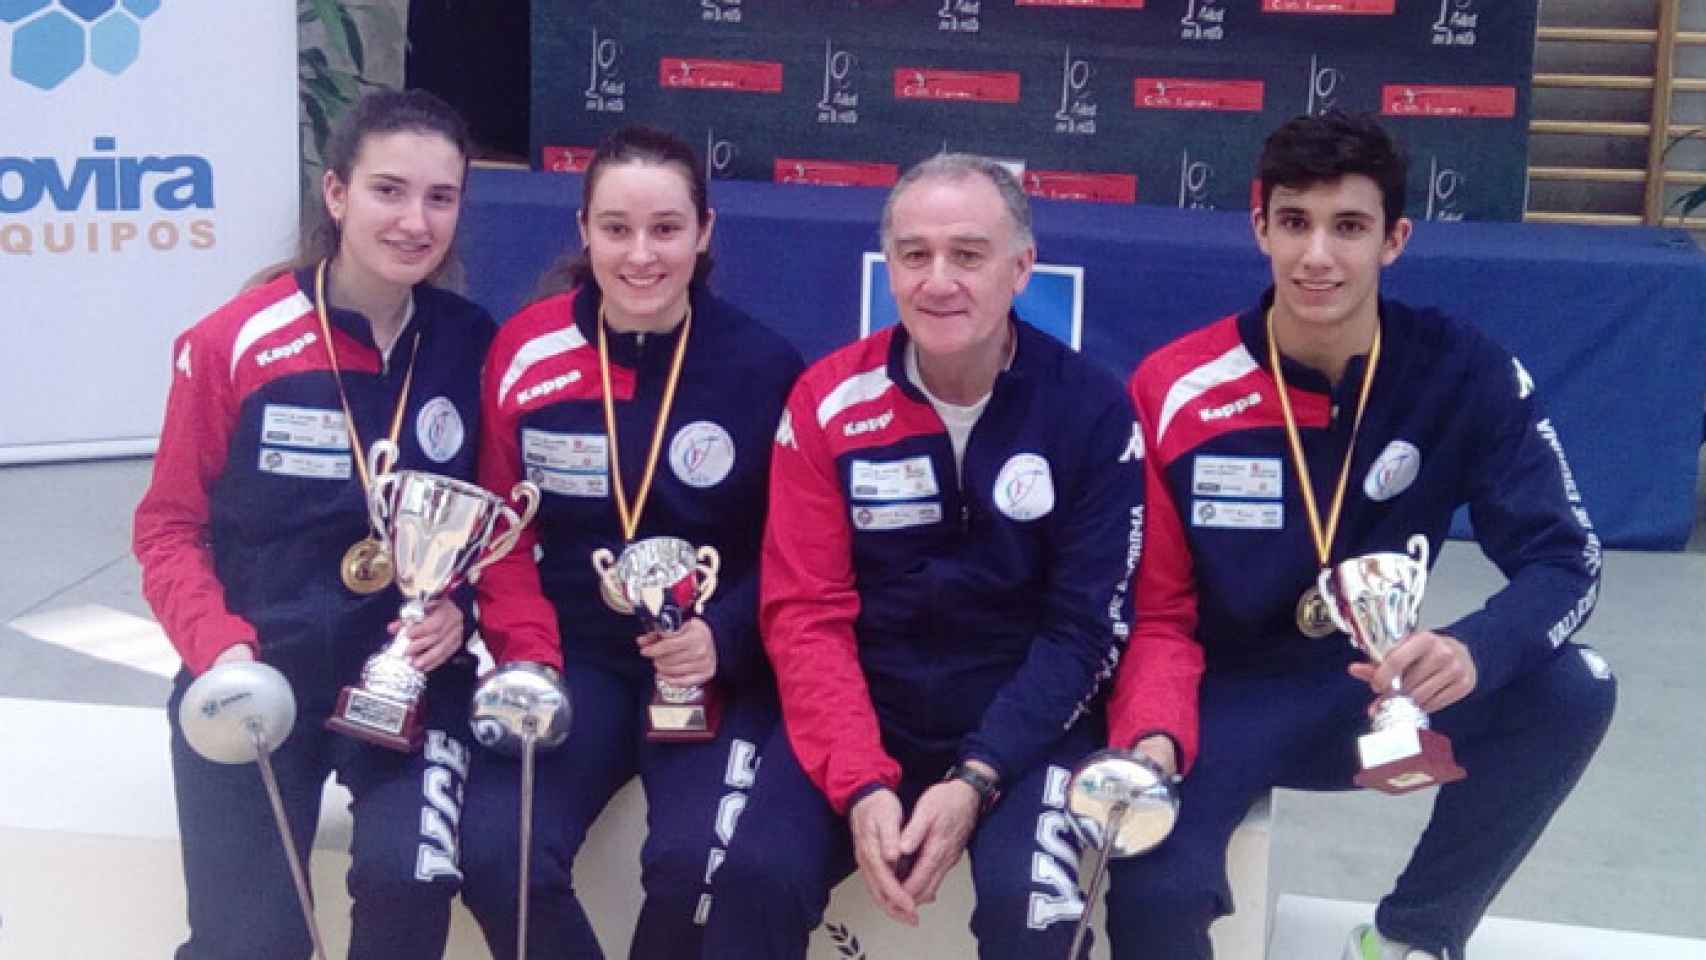 Valladolid-esgrima-campeonato-espana-medallas